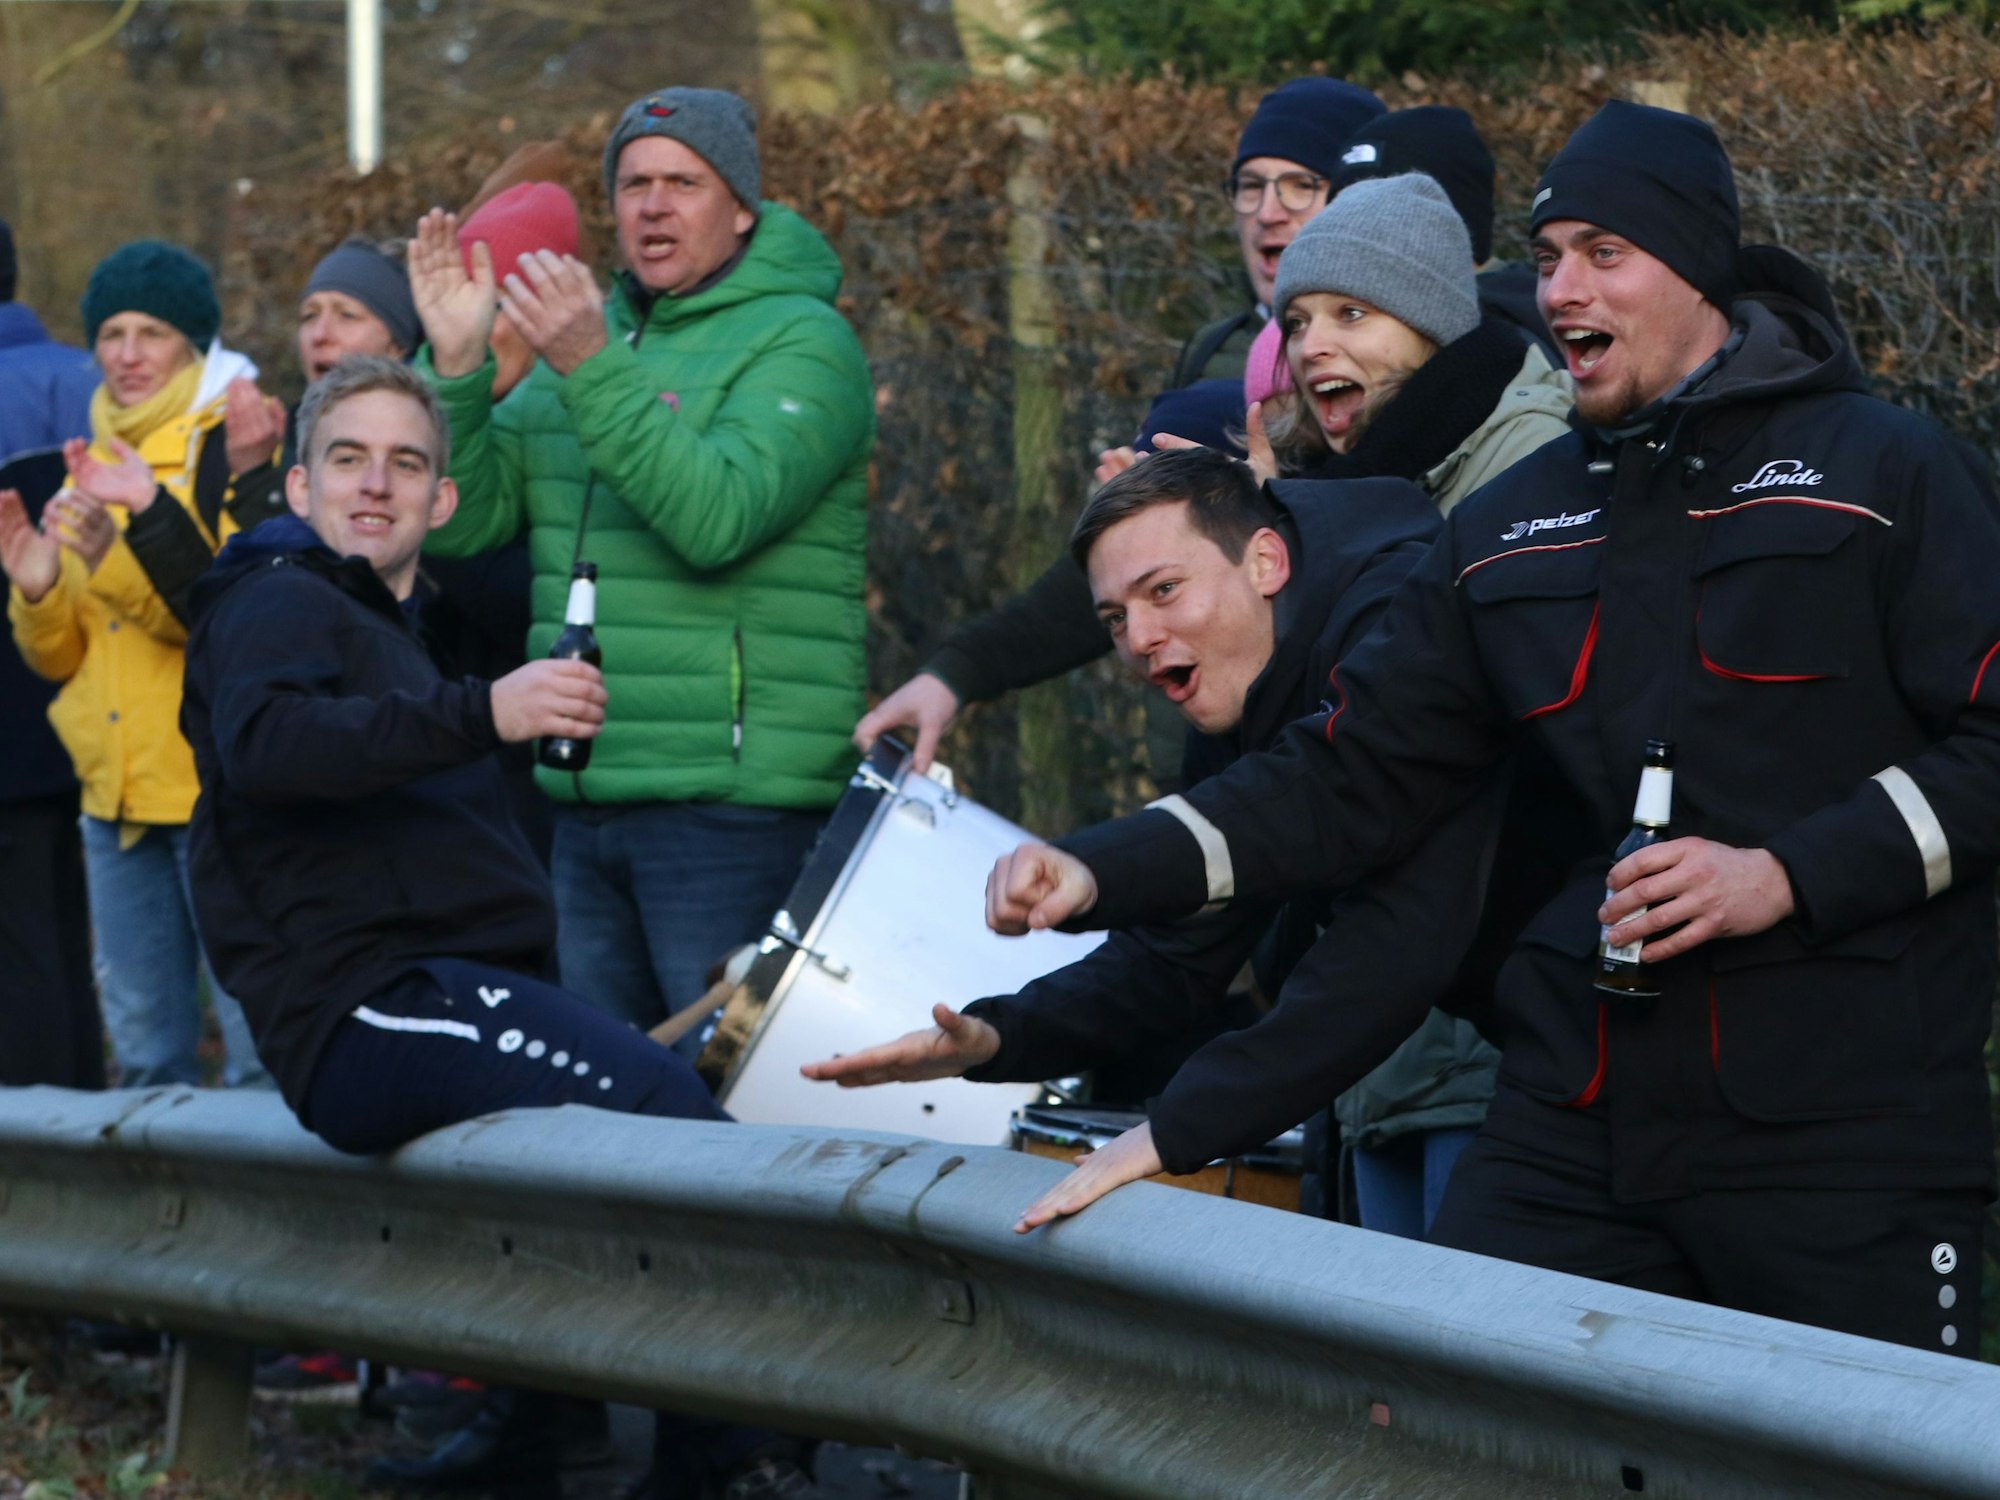 Das Bild zeigt einige Fans hinter einer Leitplanke. Sie machen Stimmung, jubeln und haben ein Bier in der Hand.